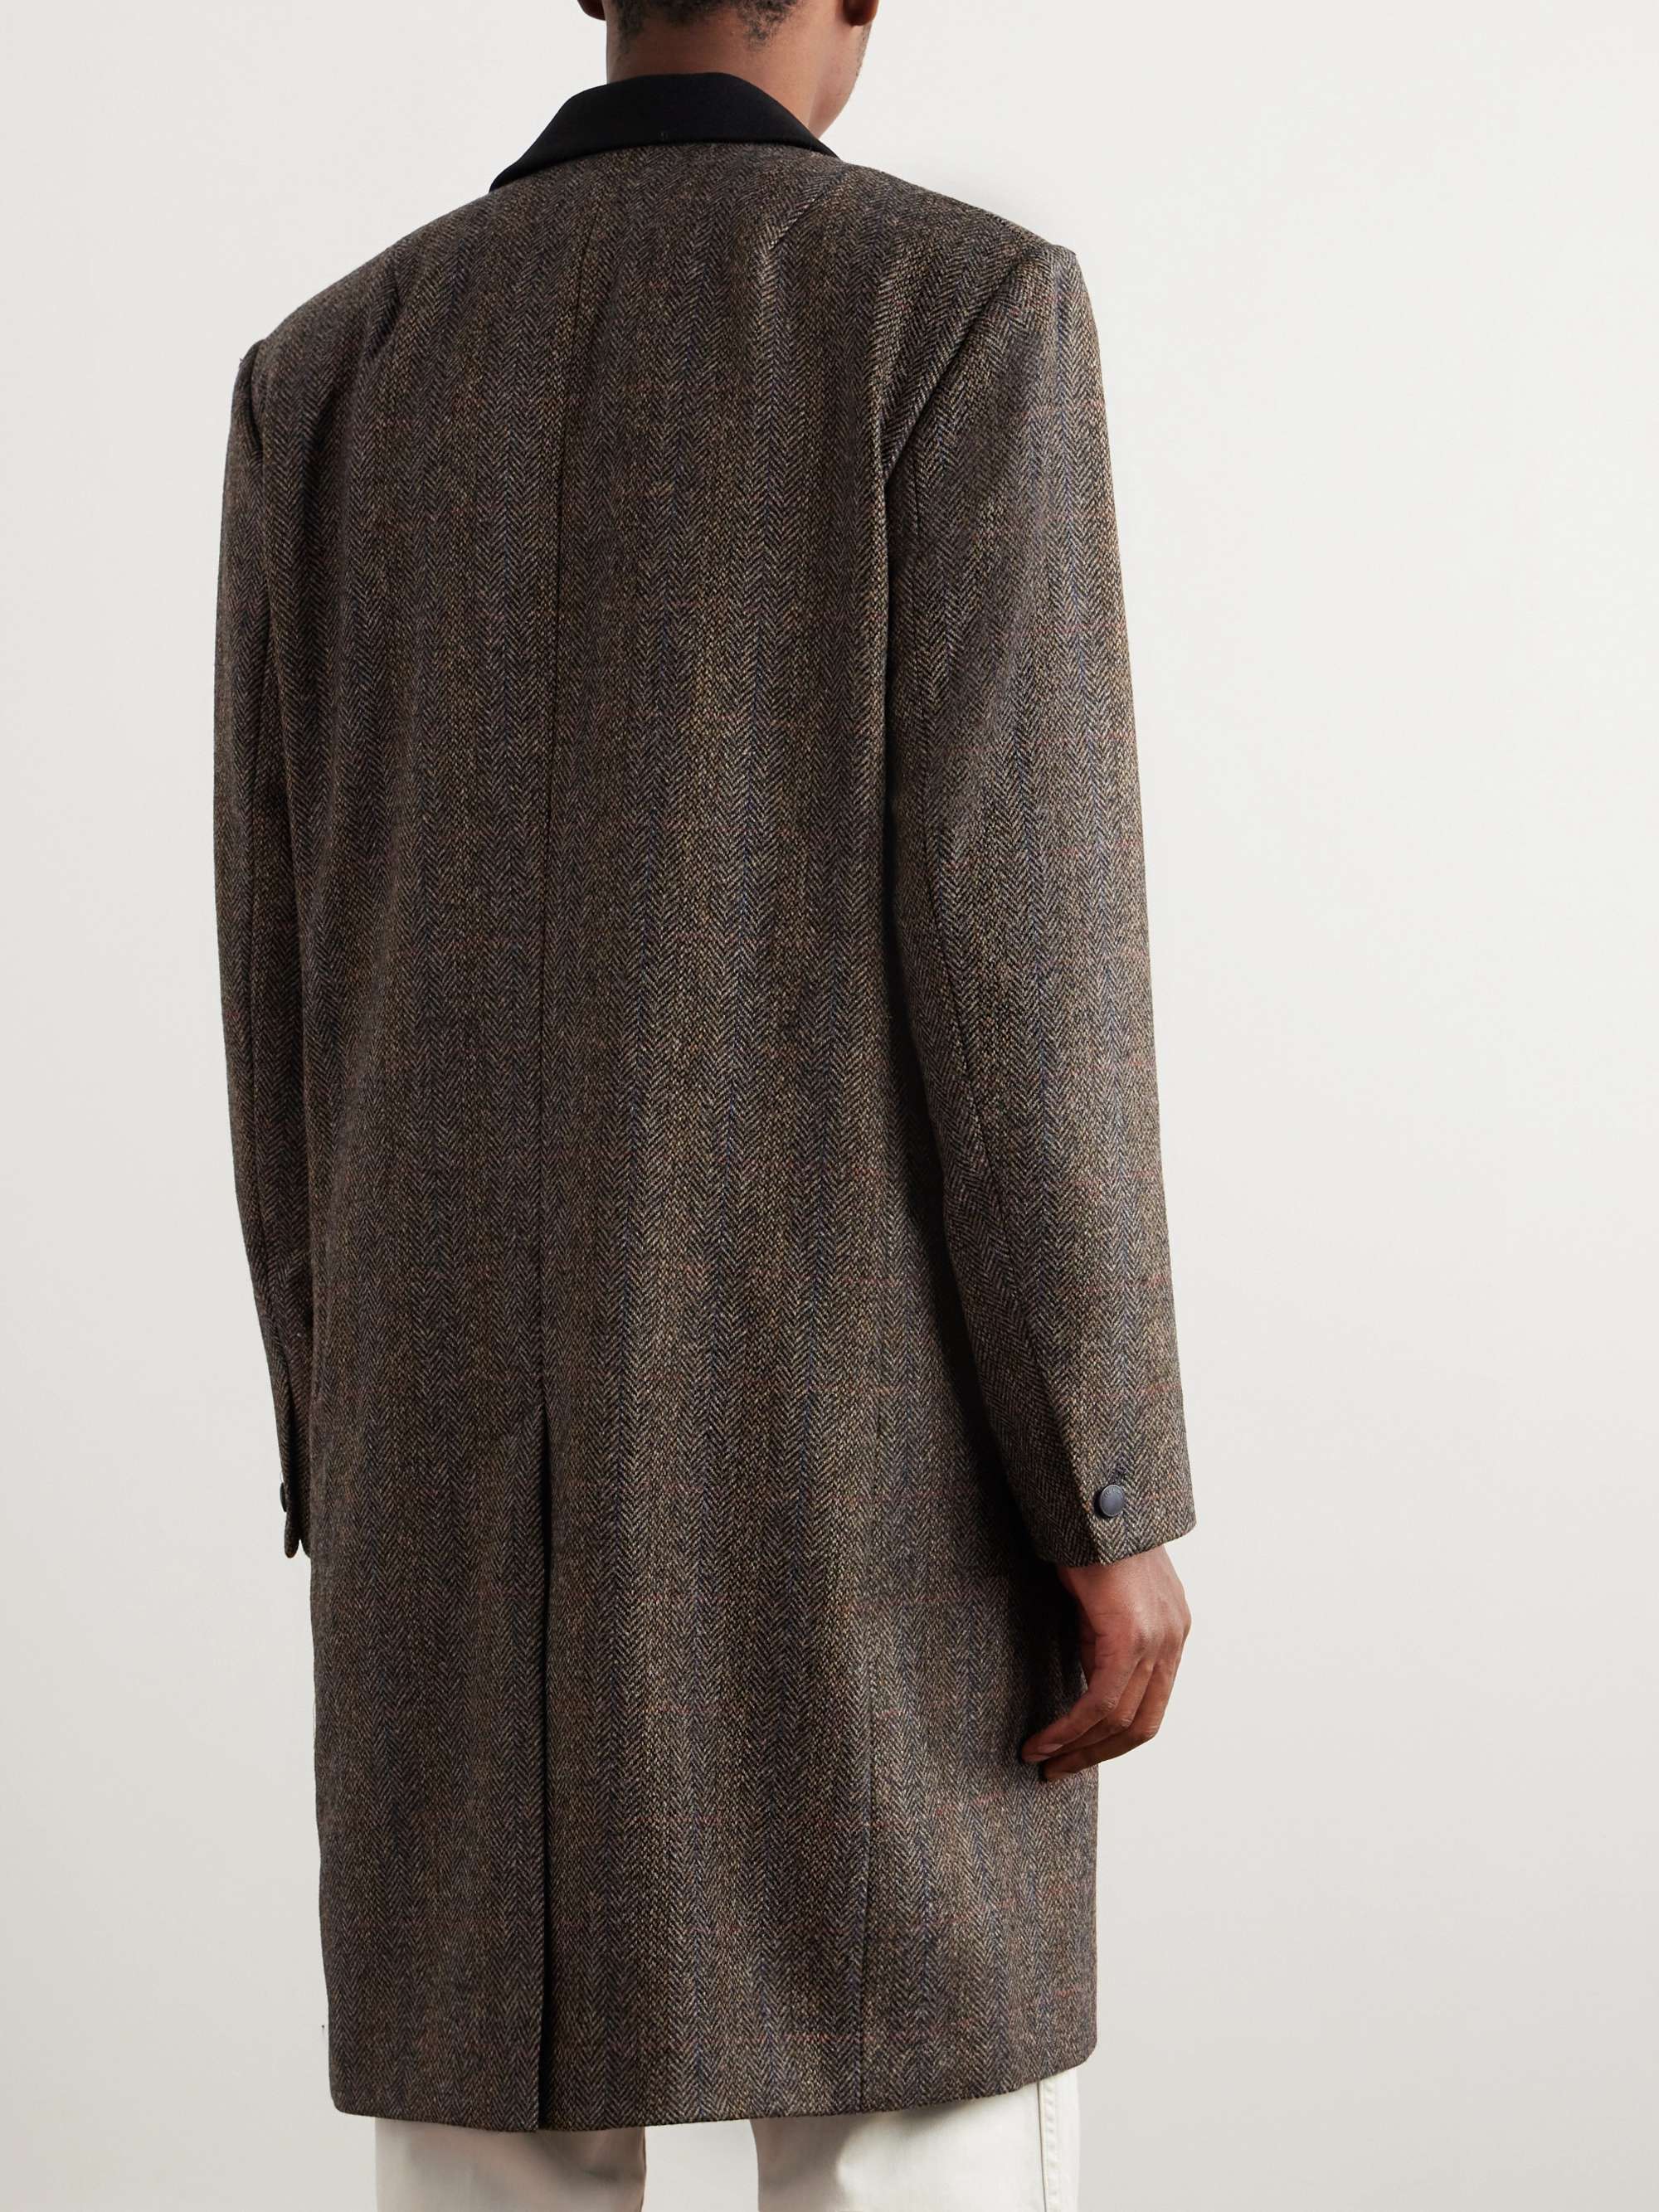 RAG & BONE Elias Heritage Herringbone Wool Coat for Men | MR PORTER